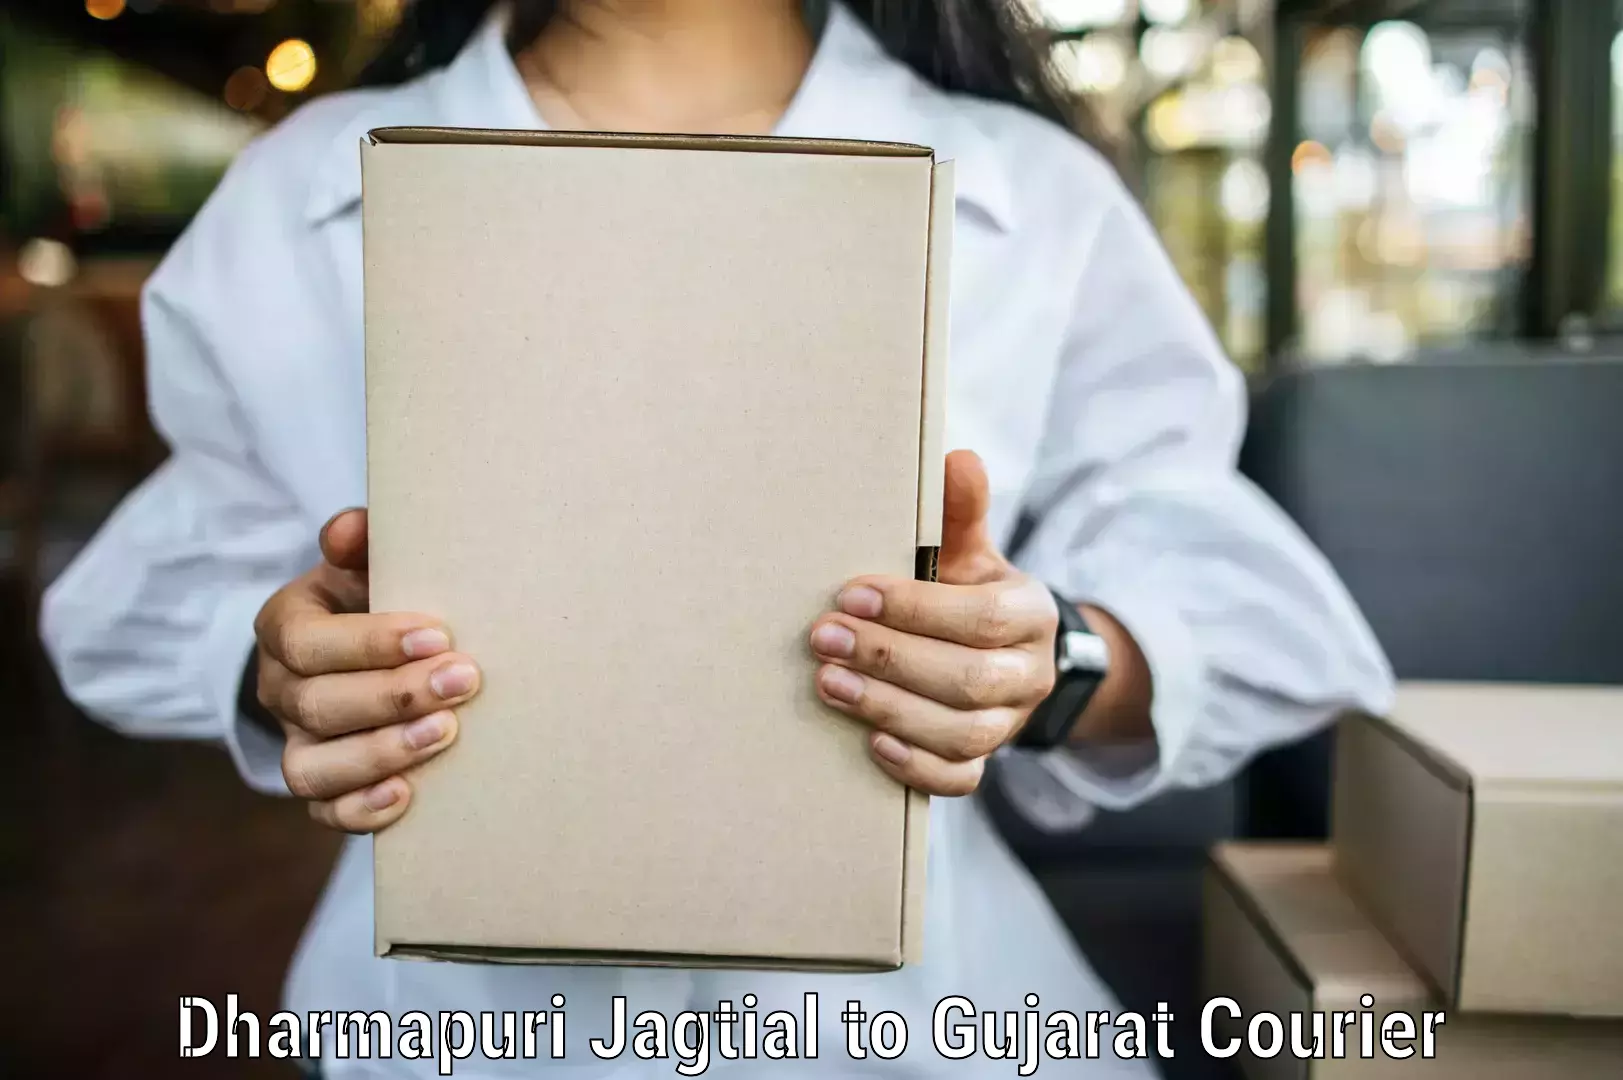 Efficient parcel delivery Dharmapuri Jagtial to Vagara